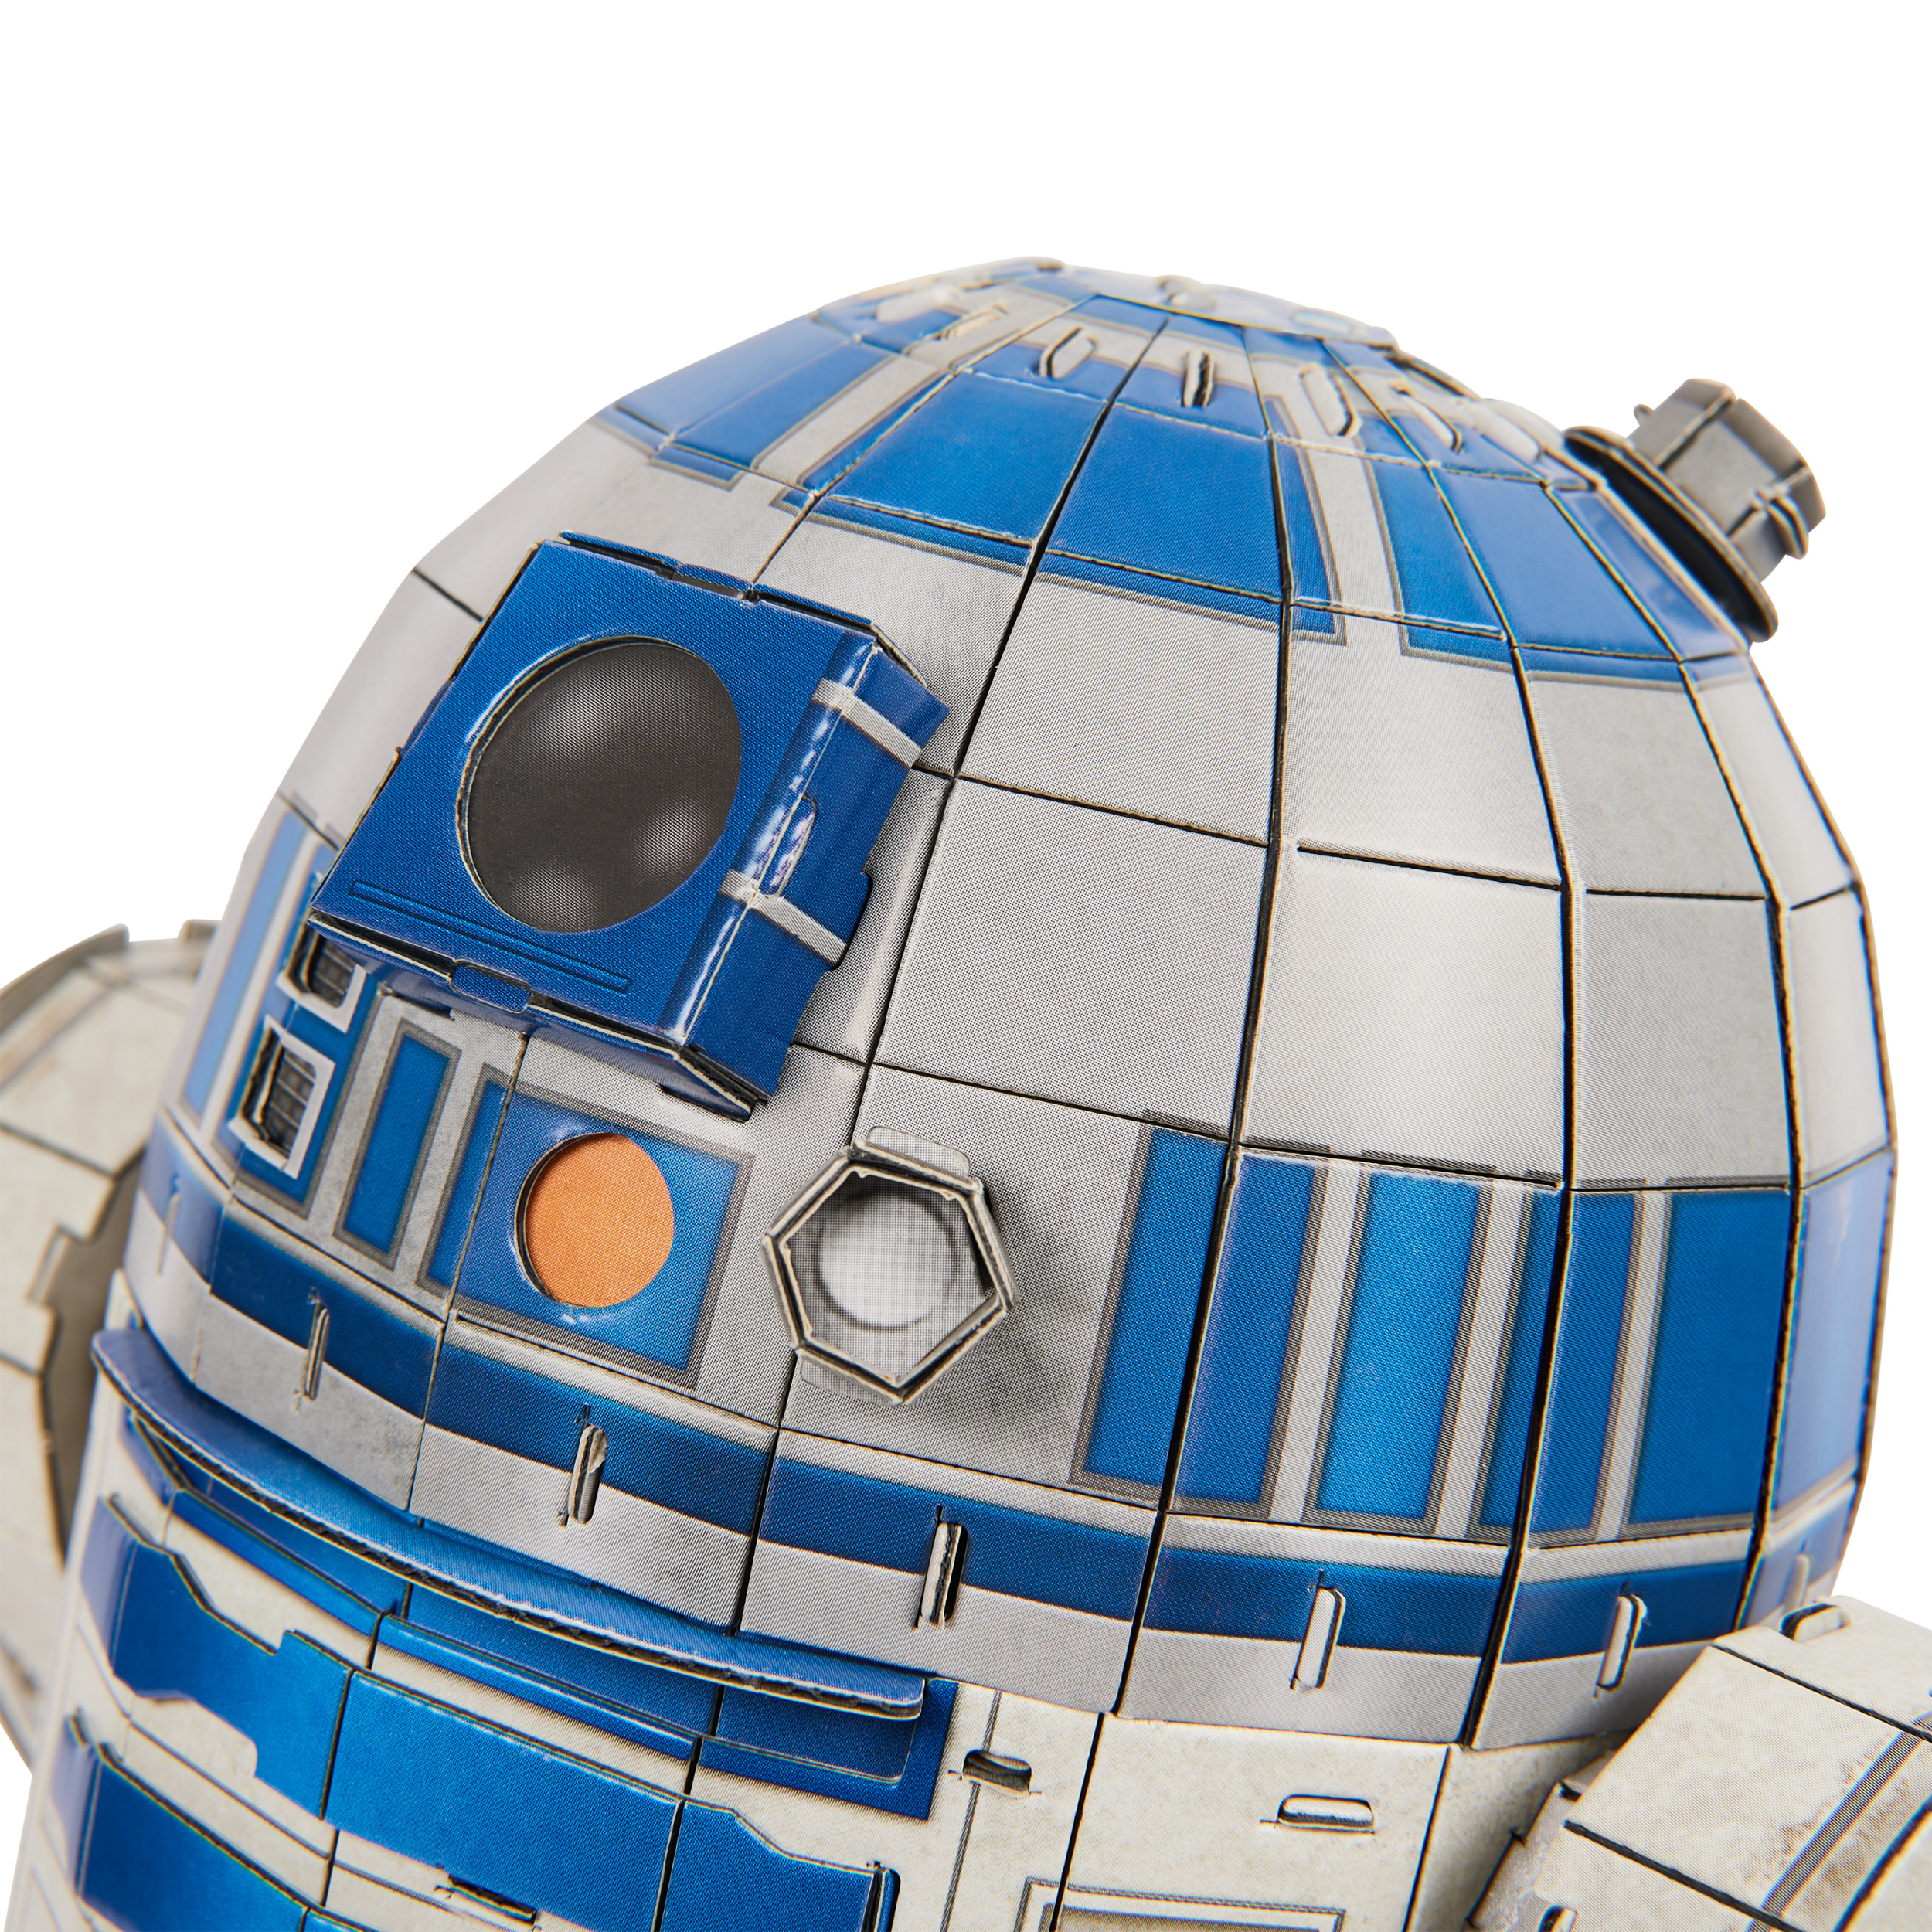 4D puzzle Star Wars: Robot R2-D2